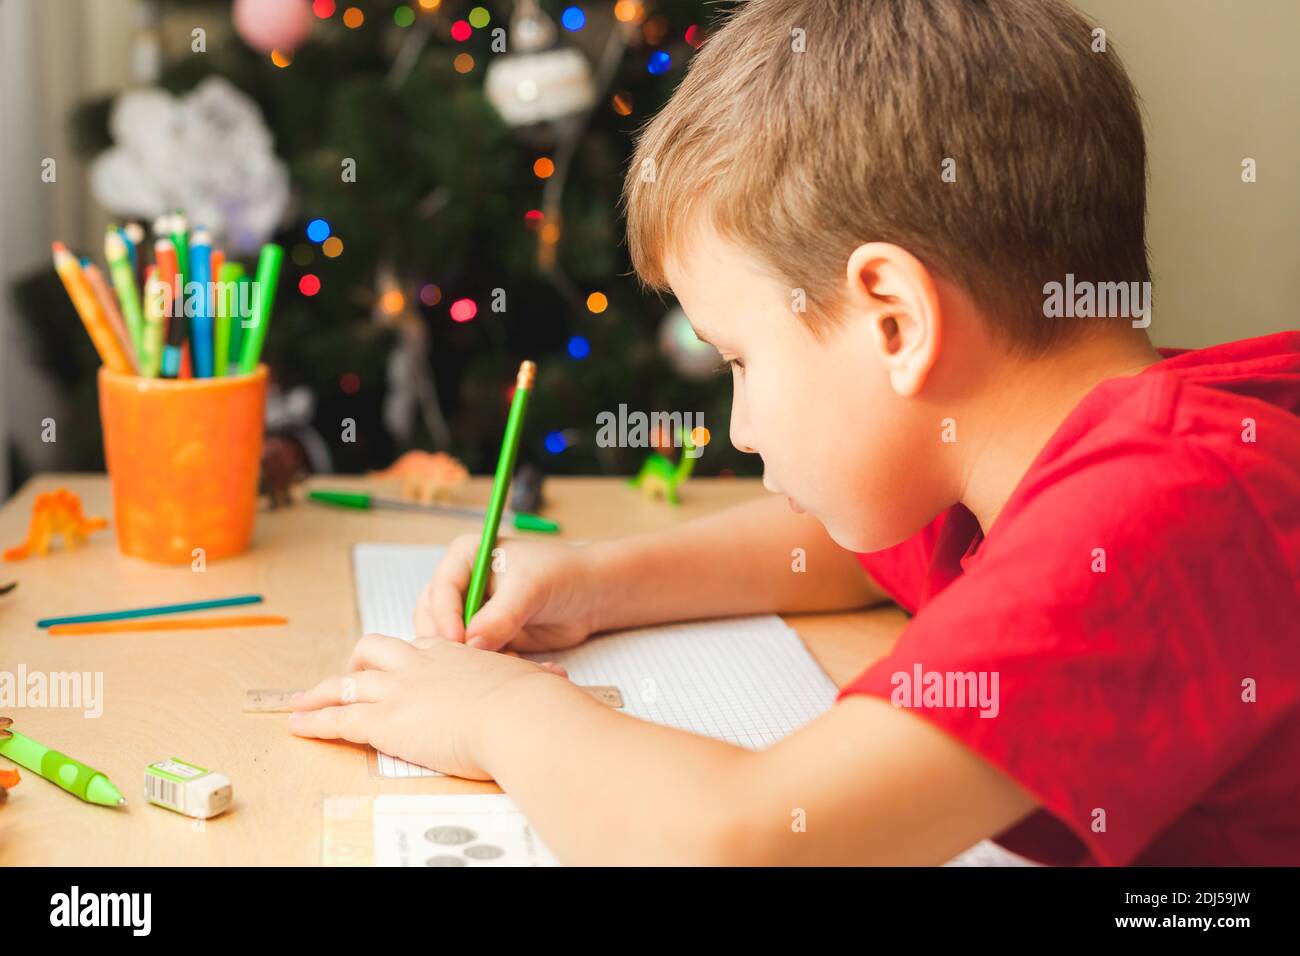 7 Jahre alter Junge, der am Schreibtisch sitzt und Hausaufgaben macht. Kind schreibt Notizen im Notizbuch, schwierige Hausaufgaben, Kind konzentriert sich auf Beispiele. Geschmückter Weihnachtsbaum im Hintergrund Stockfoto